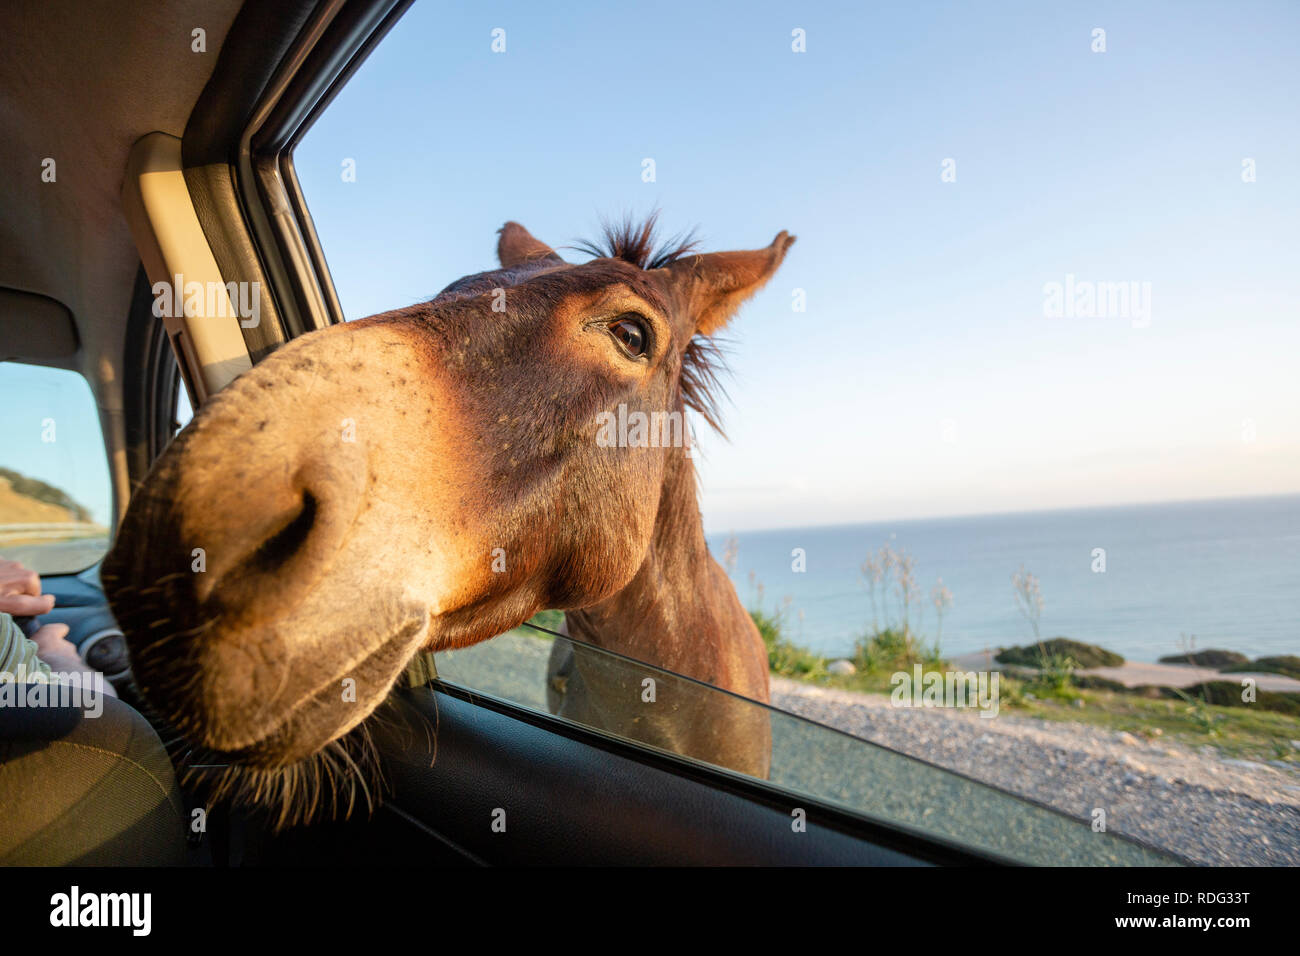 Âne sauvage mignon mettant sa tête à travers la fenêtre de voiture Banque D'Images